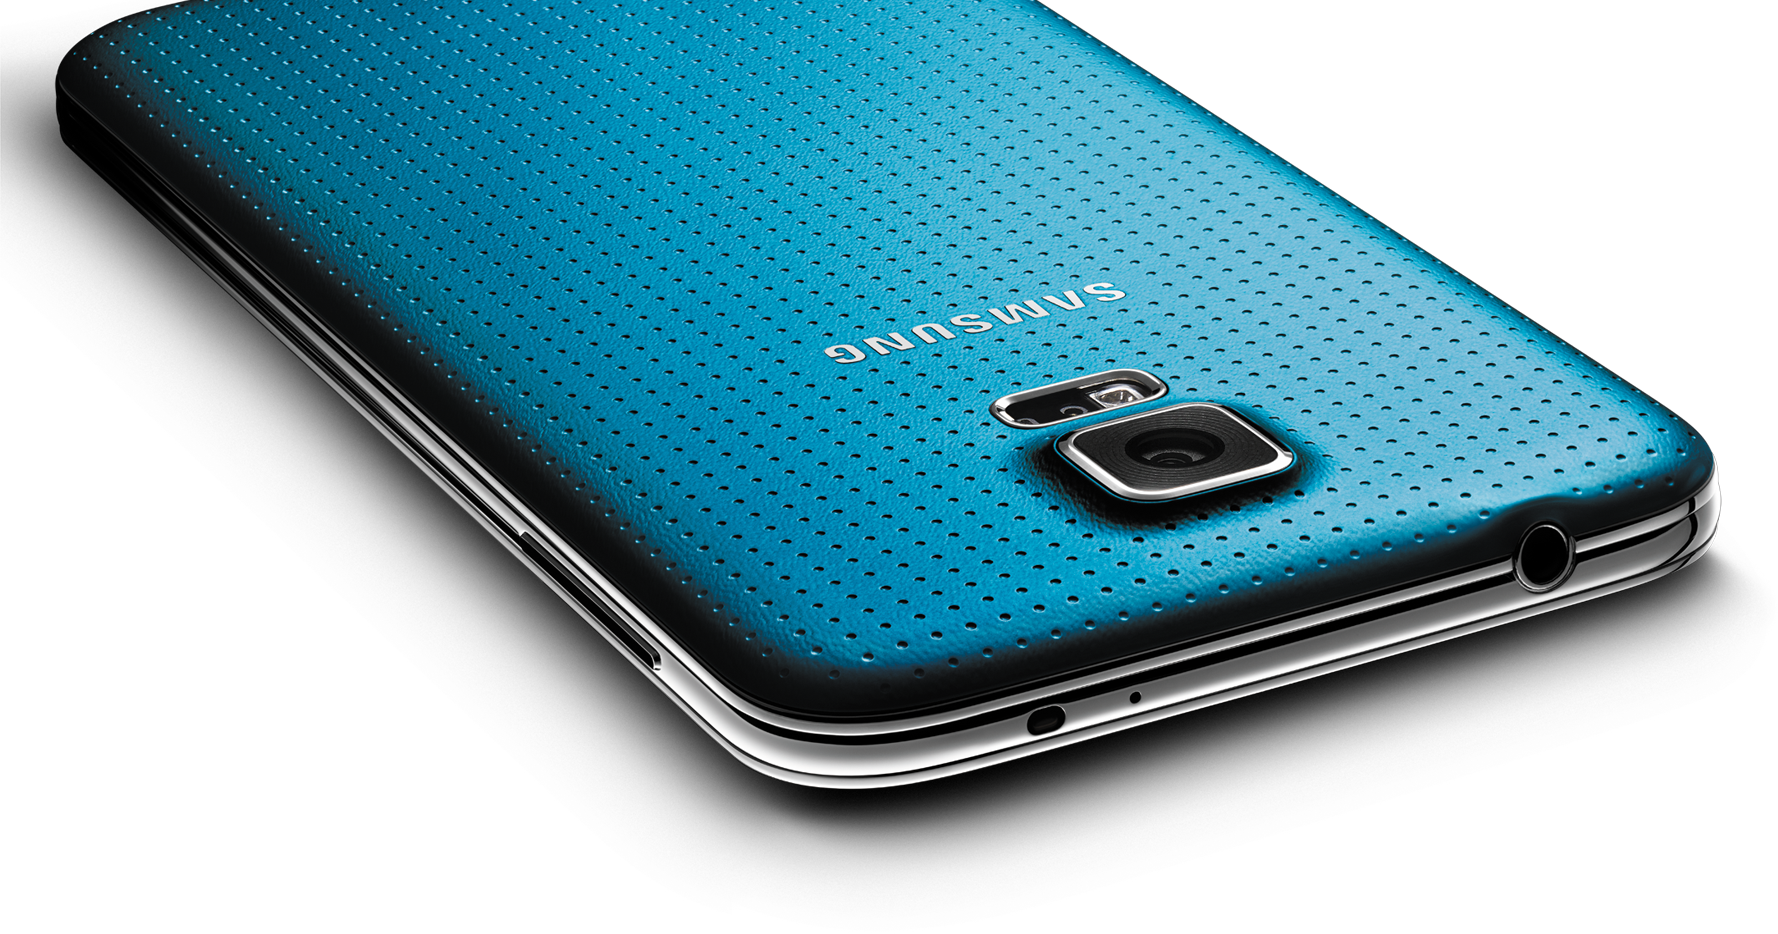 Samsung Galaxy S5 come Apple sostituisce pezzi: Problema alla fotocamera